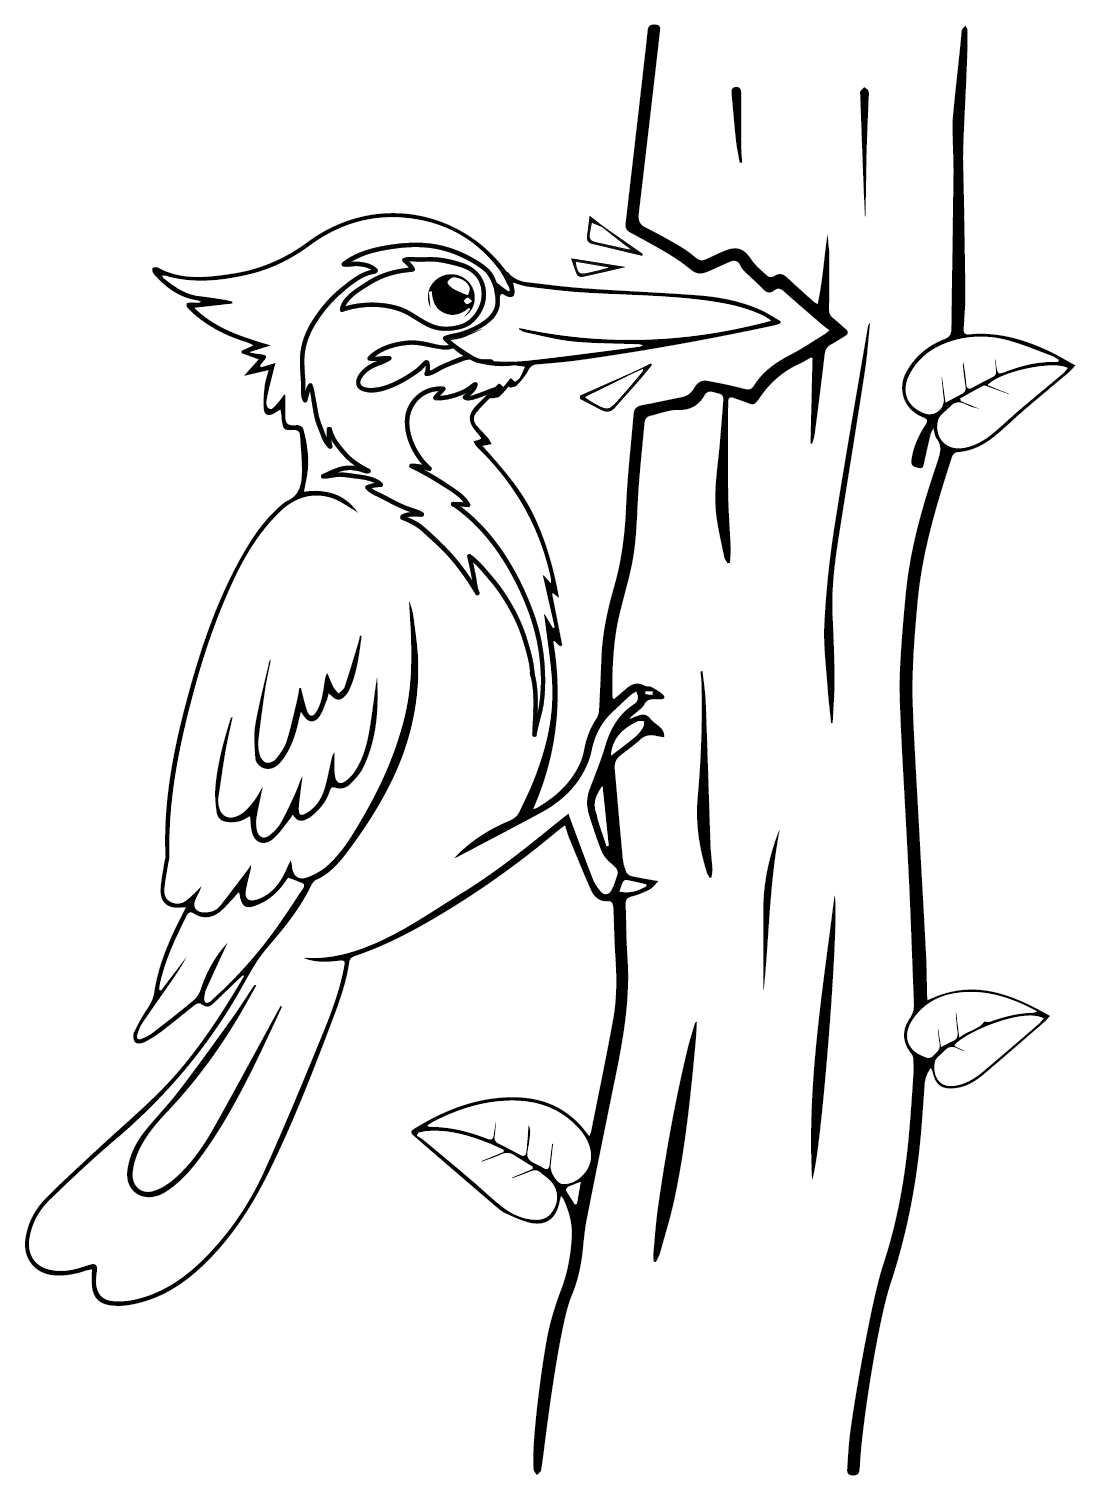 Página para colorear del pájaro carpintero velloso de Woodpecker